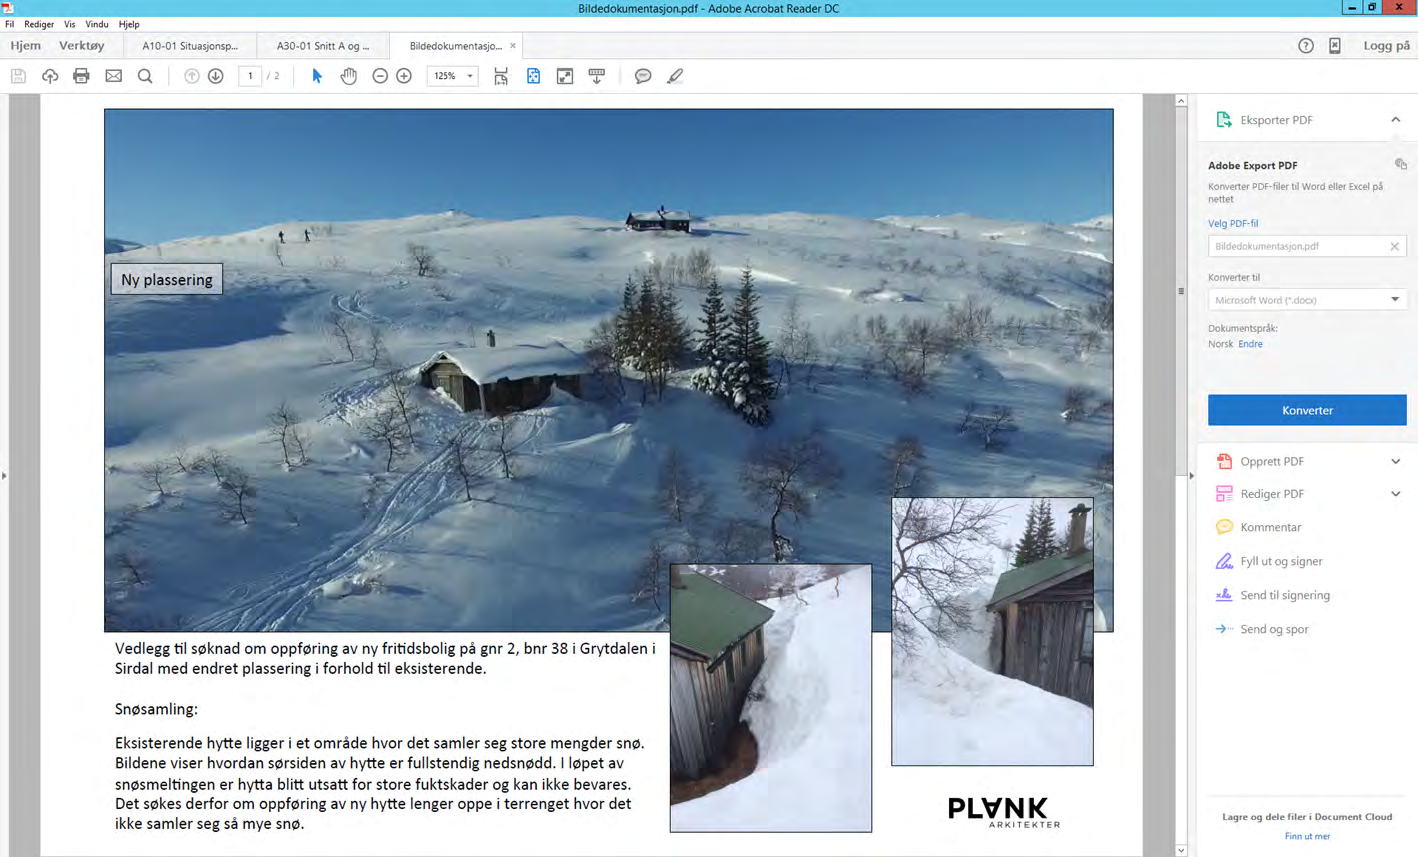 Snittegning av prosjektet Den eksisterende hytta ligger nå i et område på tomta hvor det samler seg mye snø om vinteren.